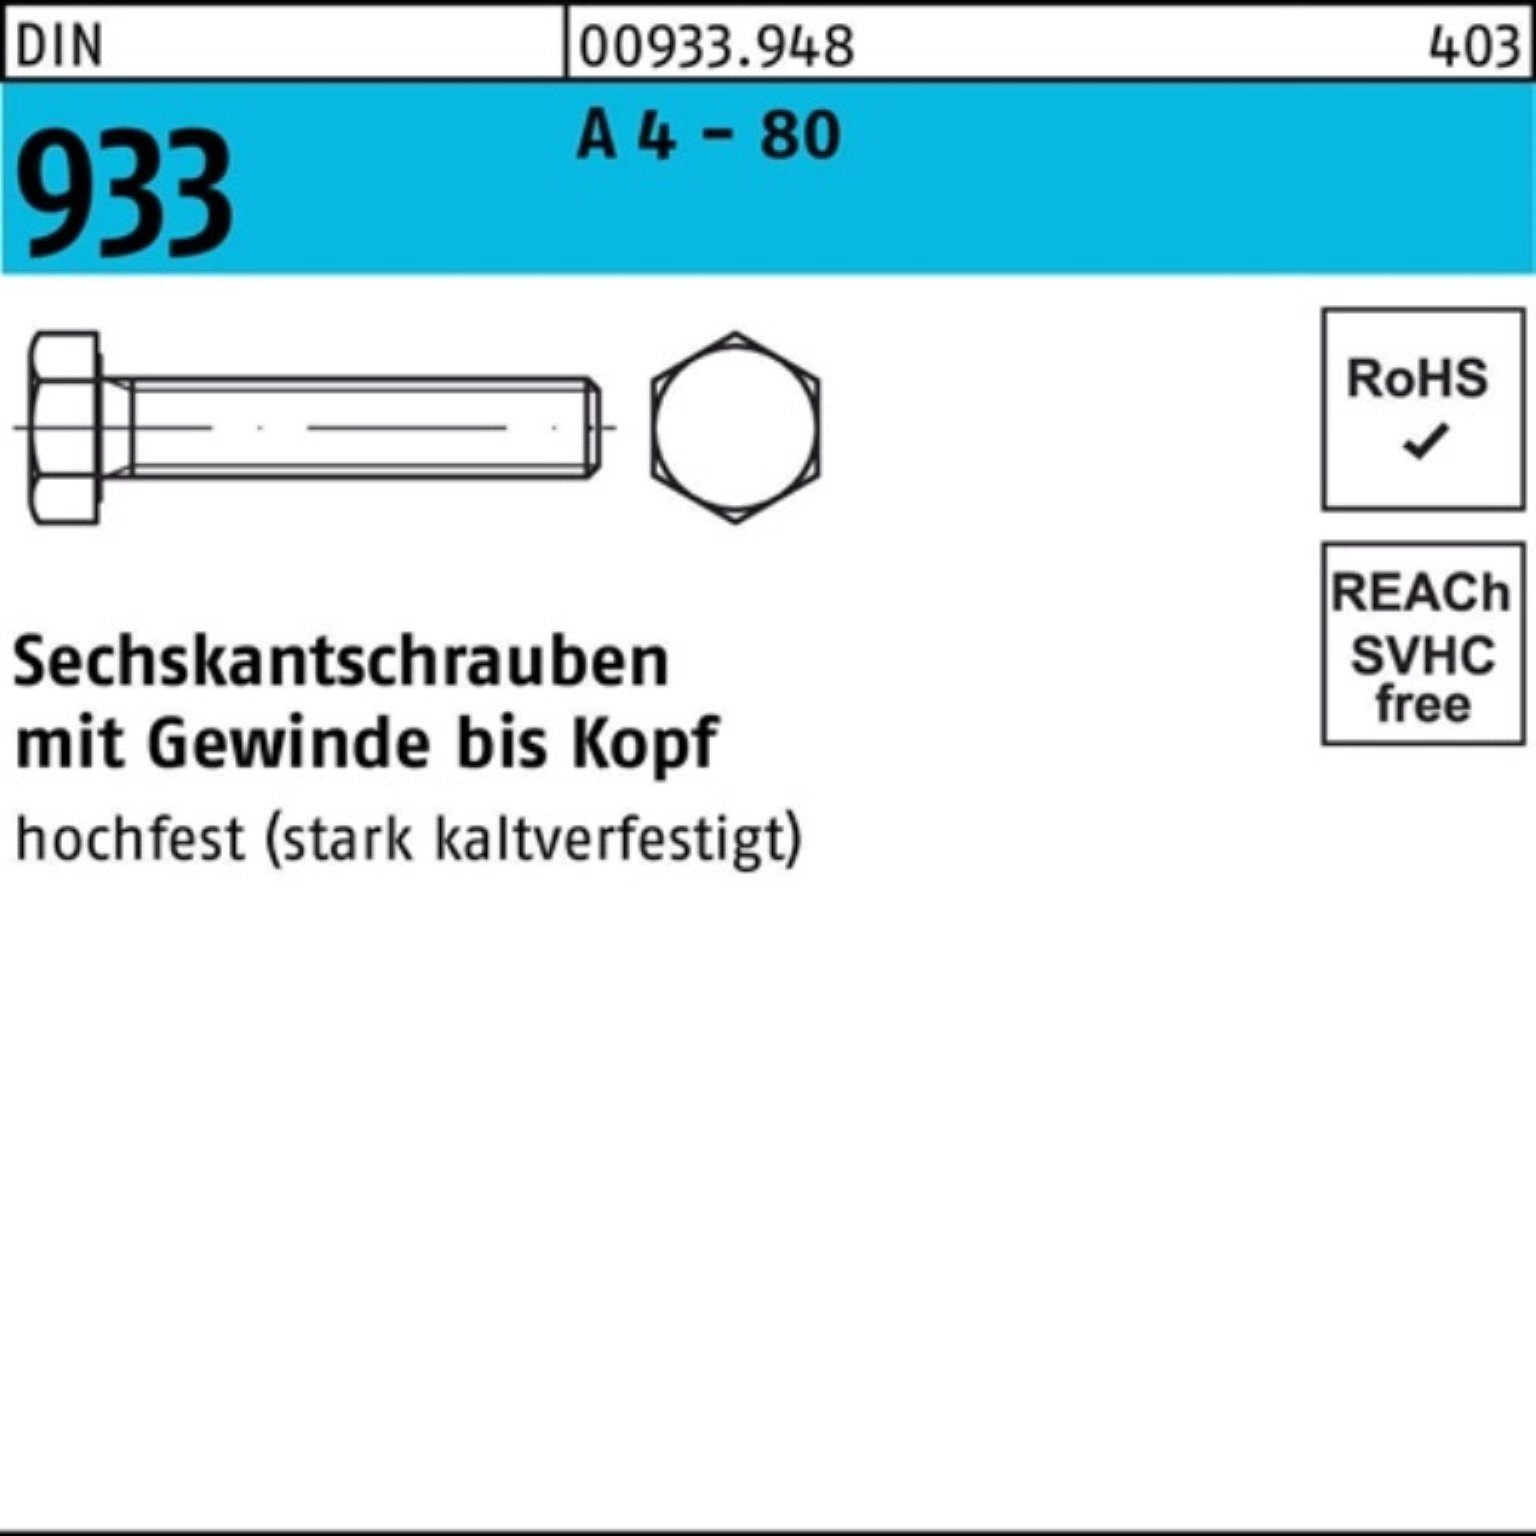 Sechskantschraube Reyher 80 4 25 100er DIN - Pack 933 M16x Sechskantschraube DIN 55 VG A Stück